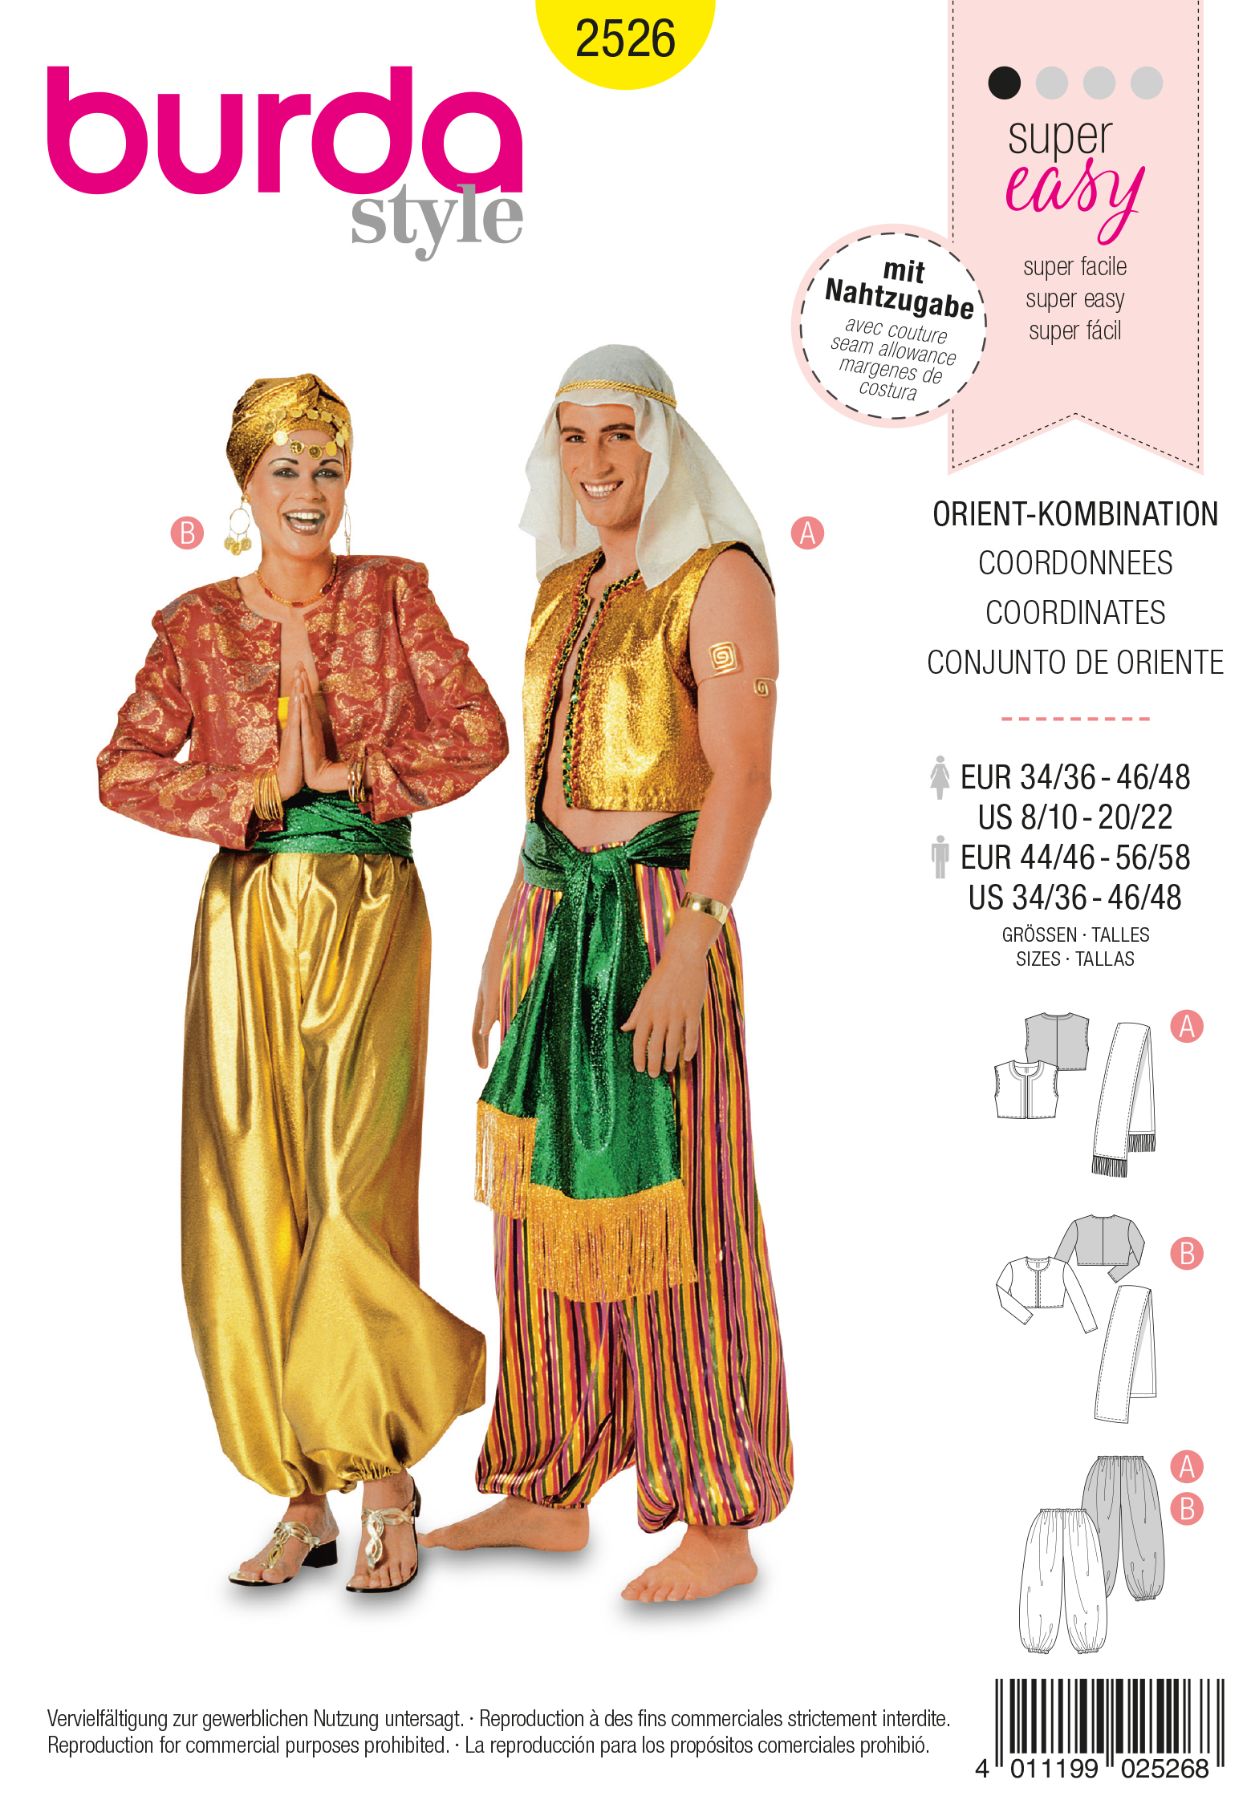 Burda Geel 2526 - Oosterse kleding in variaties